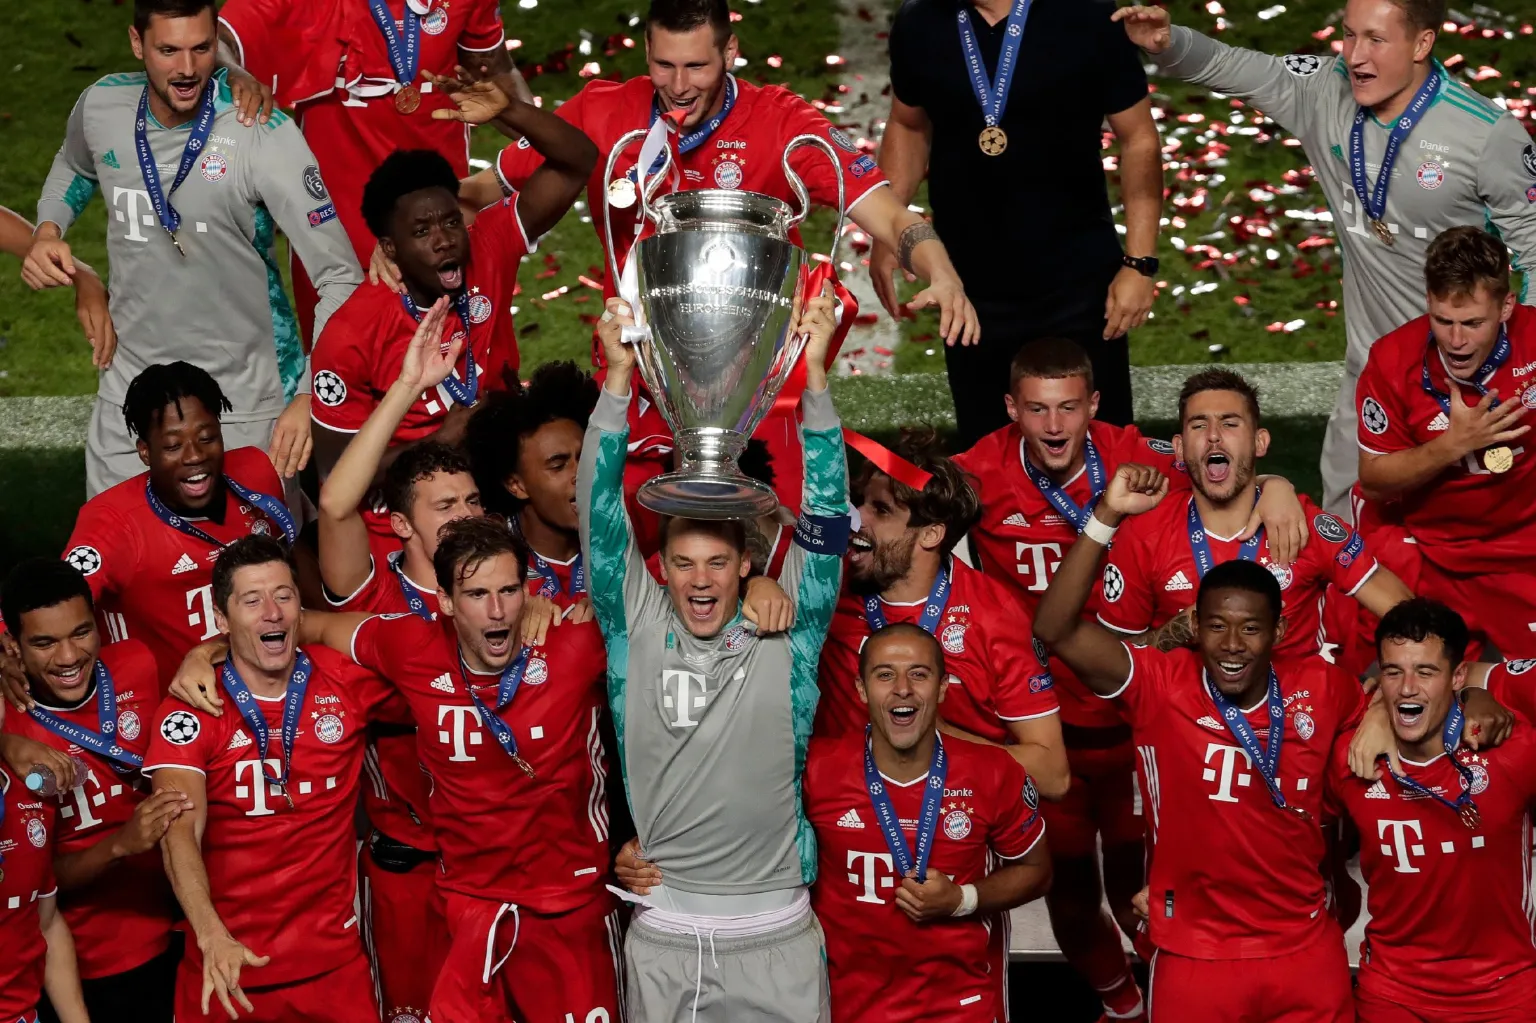 Top các đội bóng hàng đầu - Bayern Munich